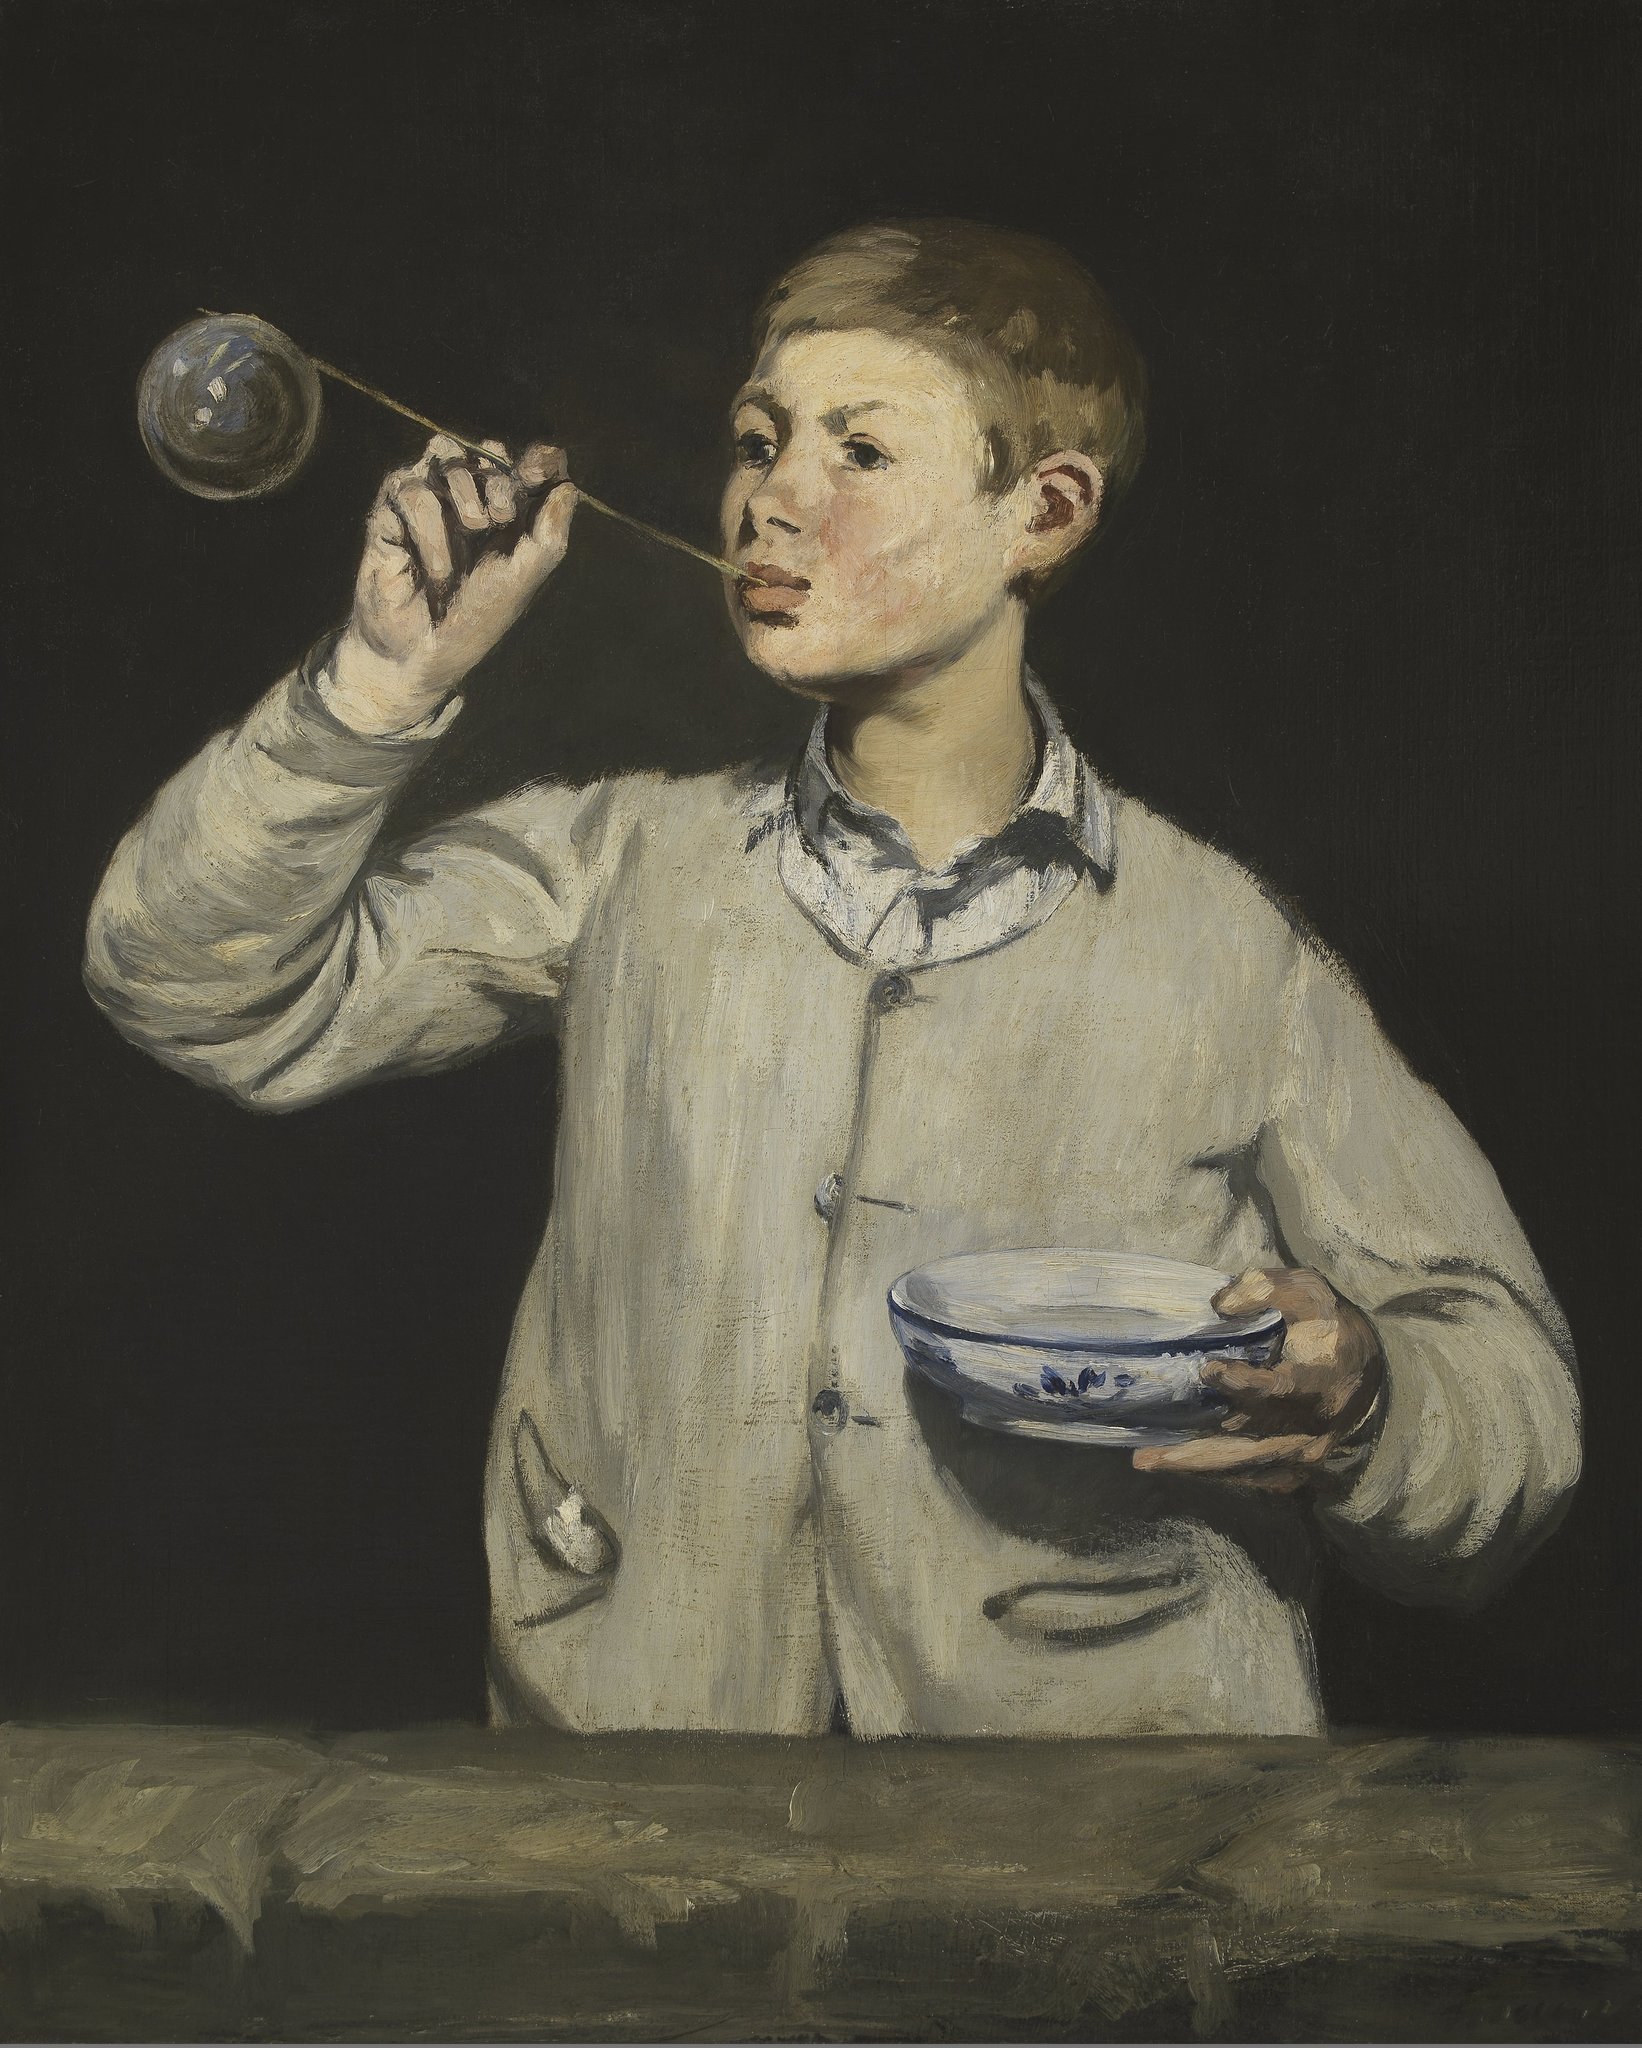 シャボン玉を吹く少年 by Édouard Manet - 1867年 - 100.5 x 81.4 cm 